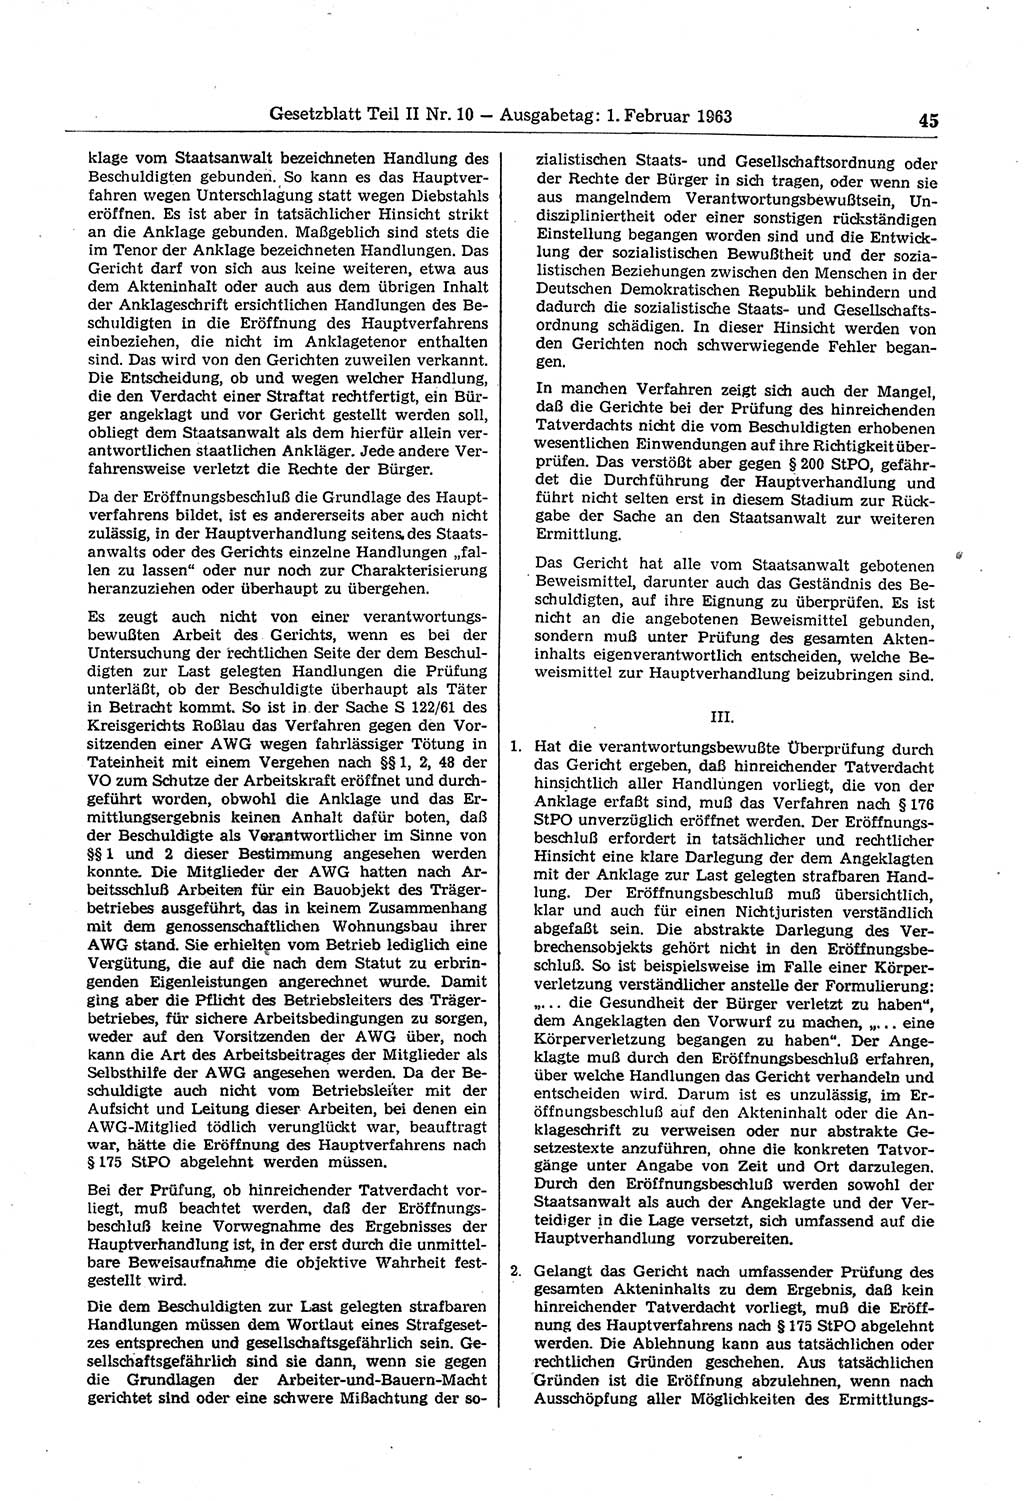 Gesetzblatt (GBl.) der Deutschen Demokratischen Republik (DDR) Teil ⅠⅠ 1963, Seite 45 (GBl. DDR ⅠⅠ 1963, S. 45)